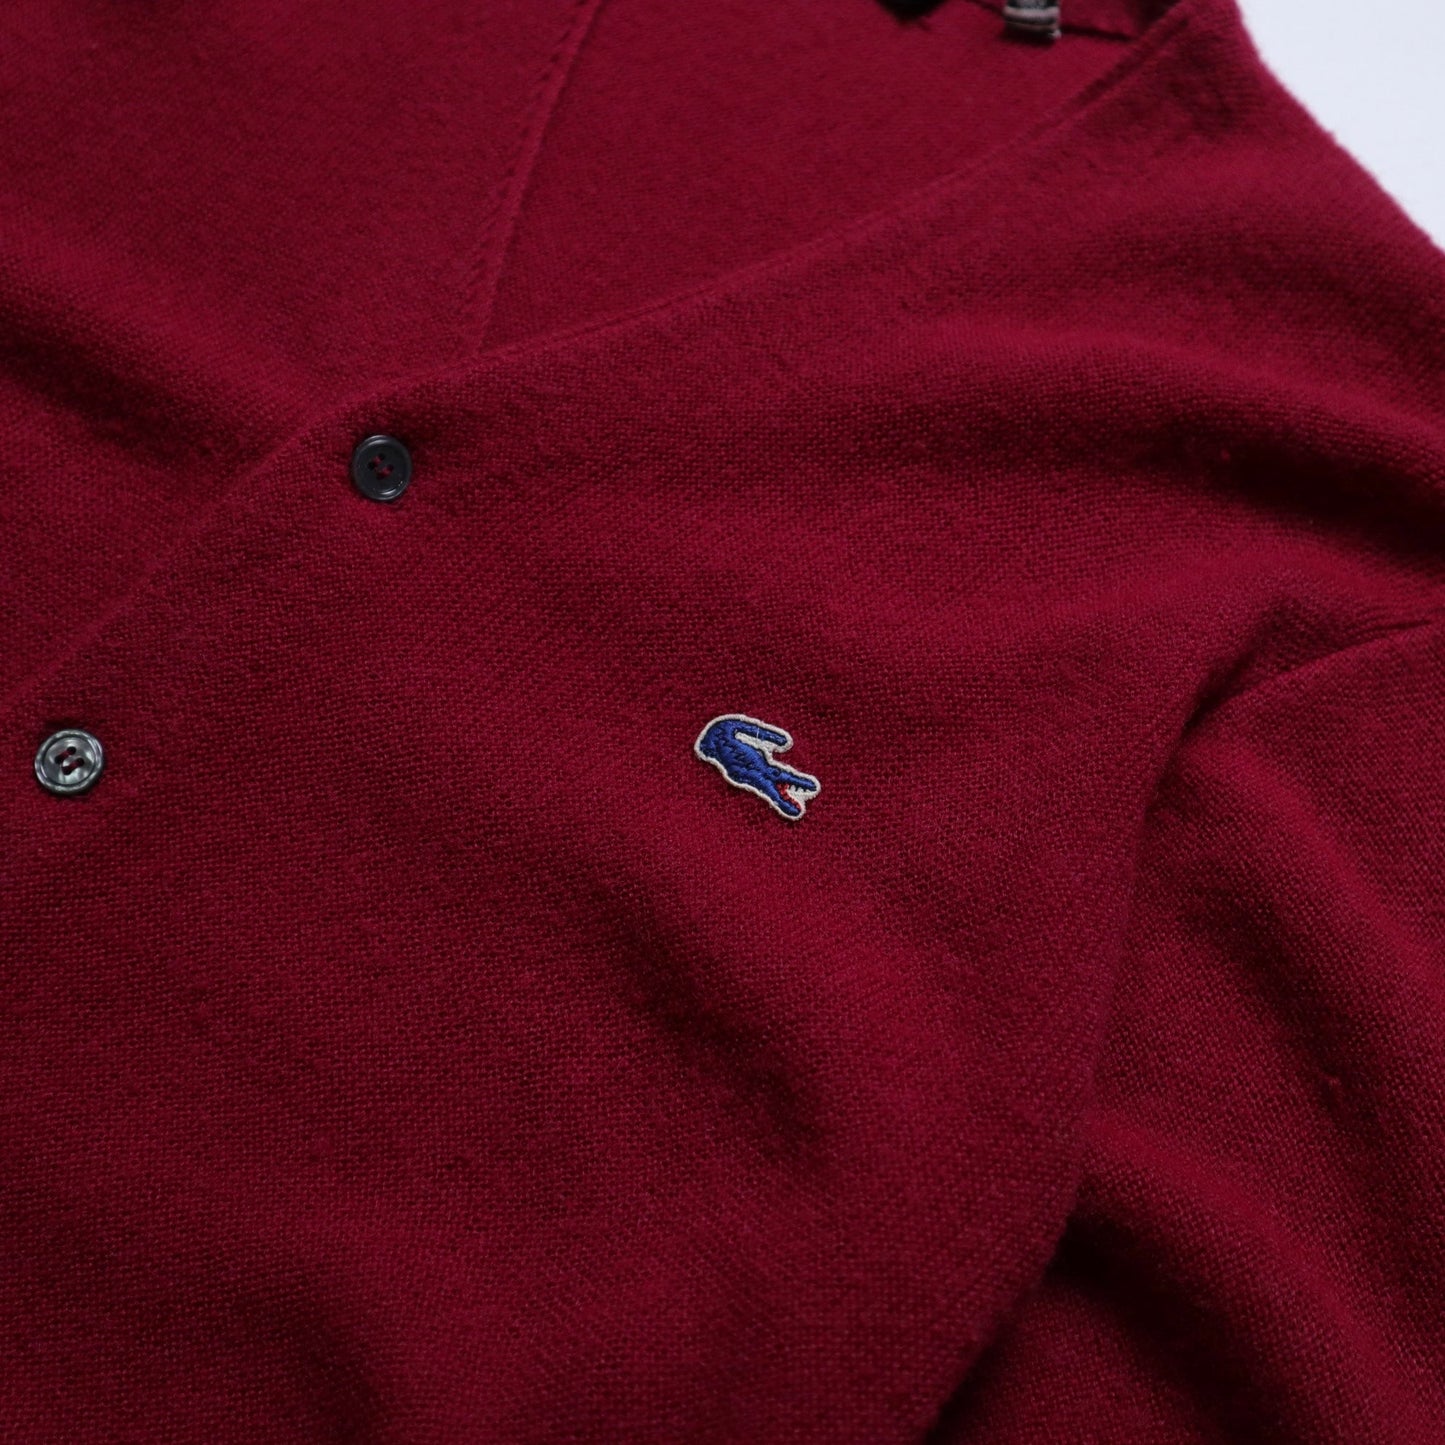 1980s LACOSTE IZOD burgundy knitted jacket Cardigan